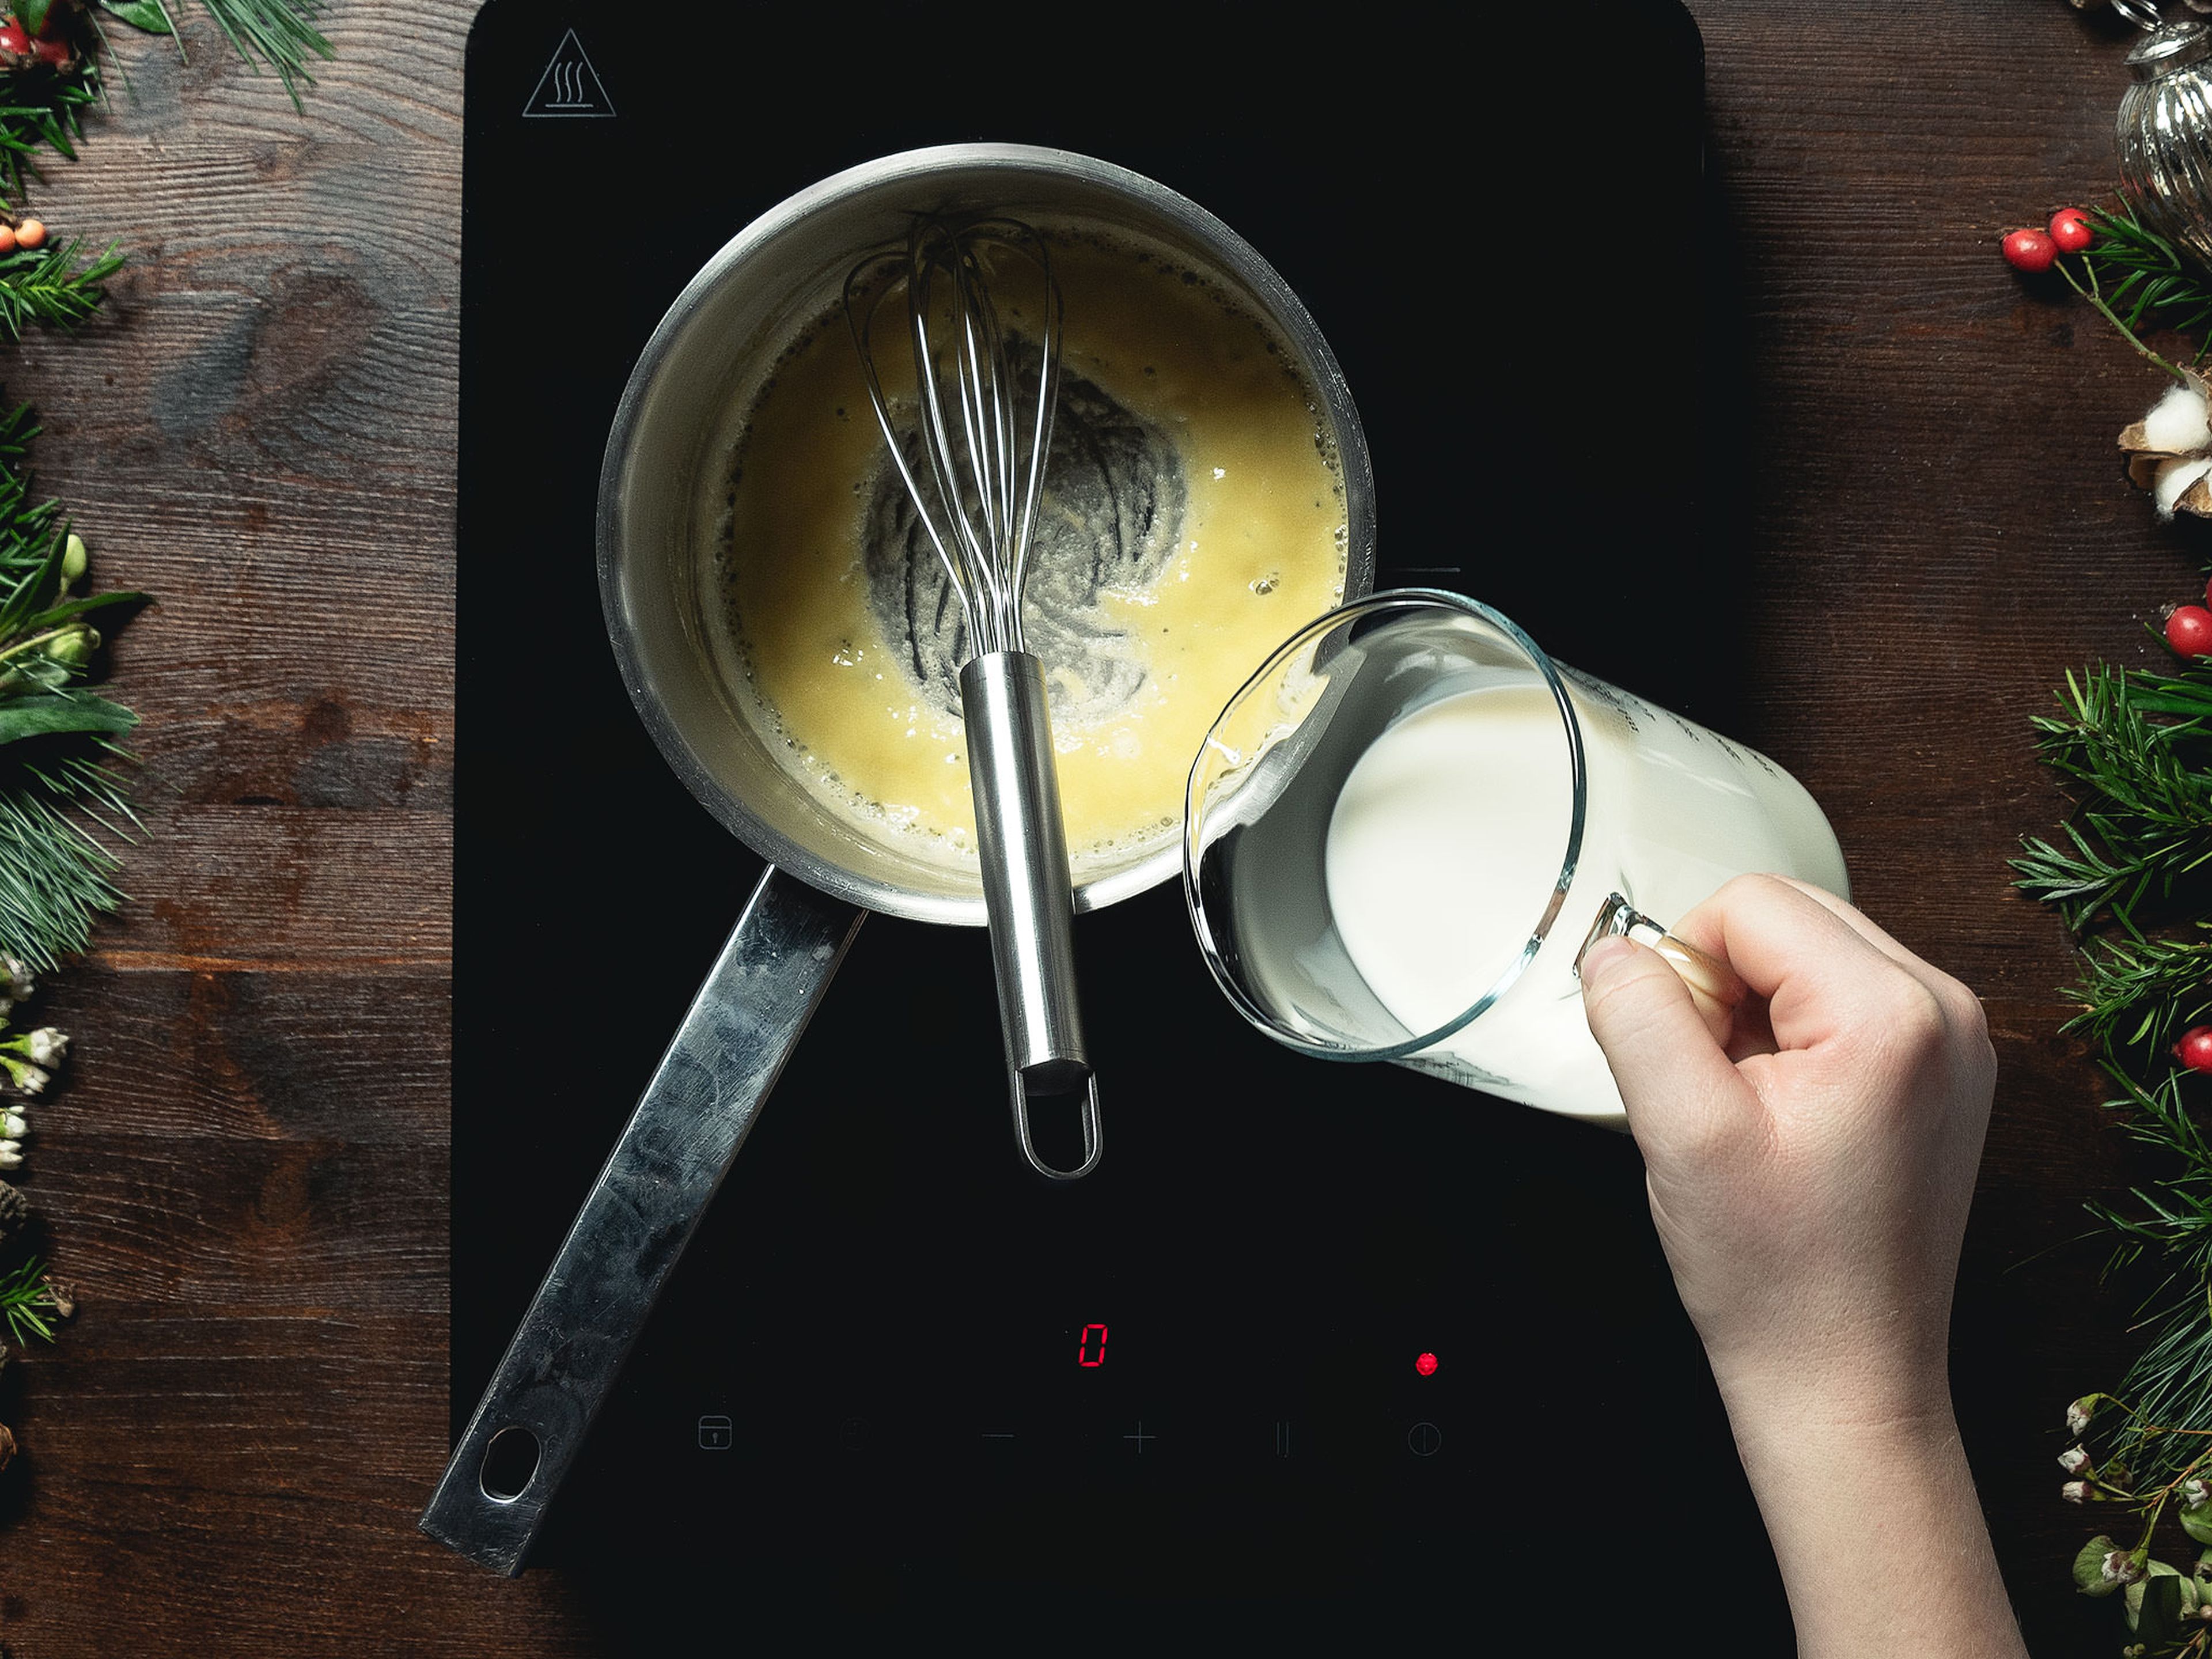 Ofen auf 200°C vorheizen. Butter in einem kleinen Topf schmelzen, Mehl hinzugeben und Schritt für Schritt die Milch während des Rührens mit einem Schneebesen hinzufügen. Sobald die Masse dick und geschmeidig ist, mit Muskatnuss und Salz würzen und körnigen Senf hinzufügen. Bis zum Servieren warm halten.